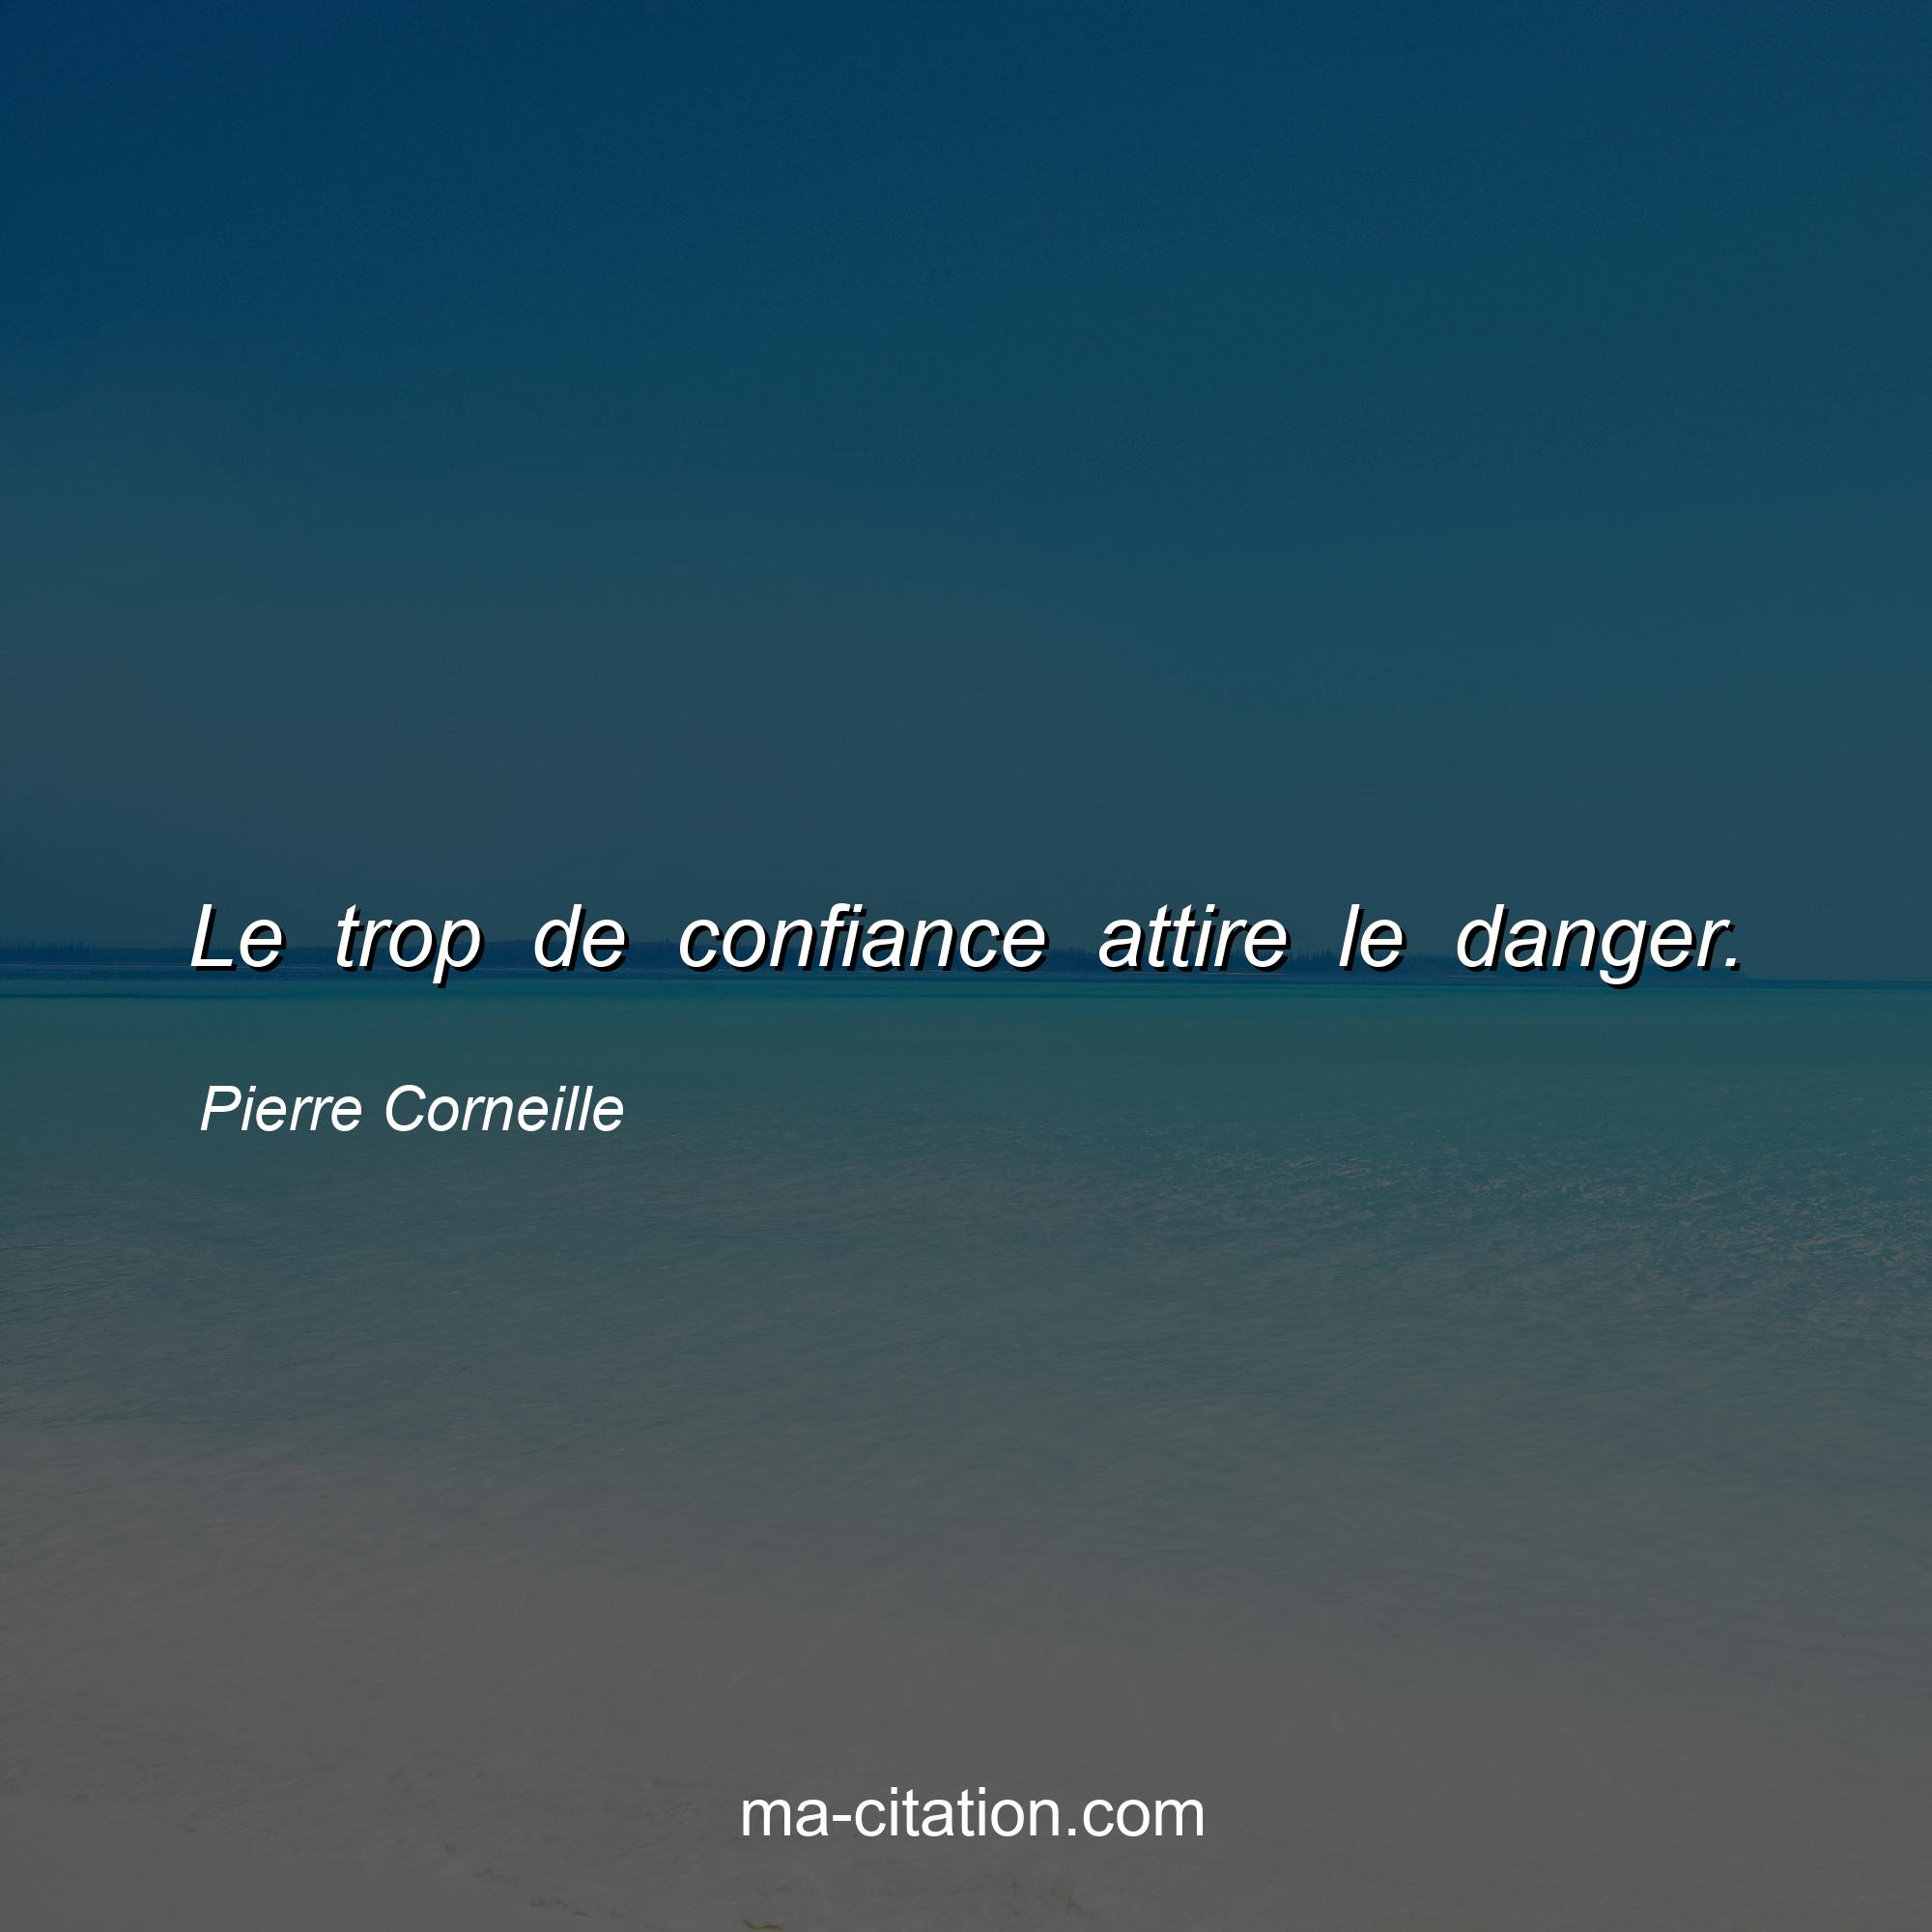 Pierre Corneille : Le trop de confiance attire le danger.